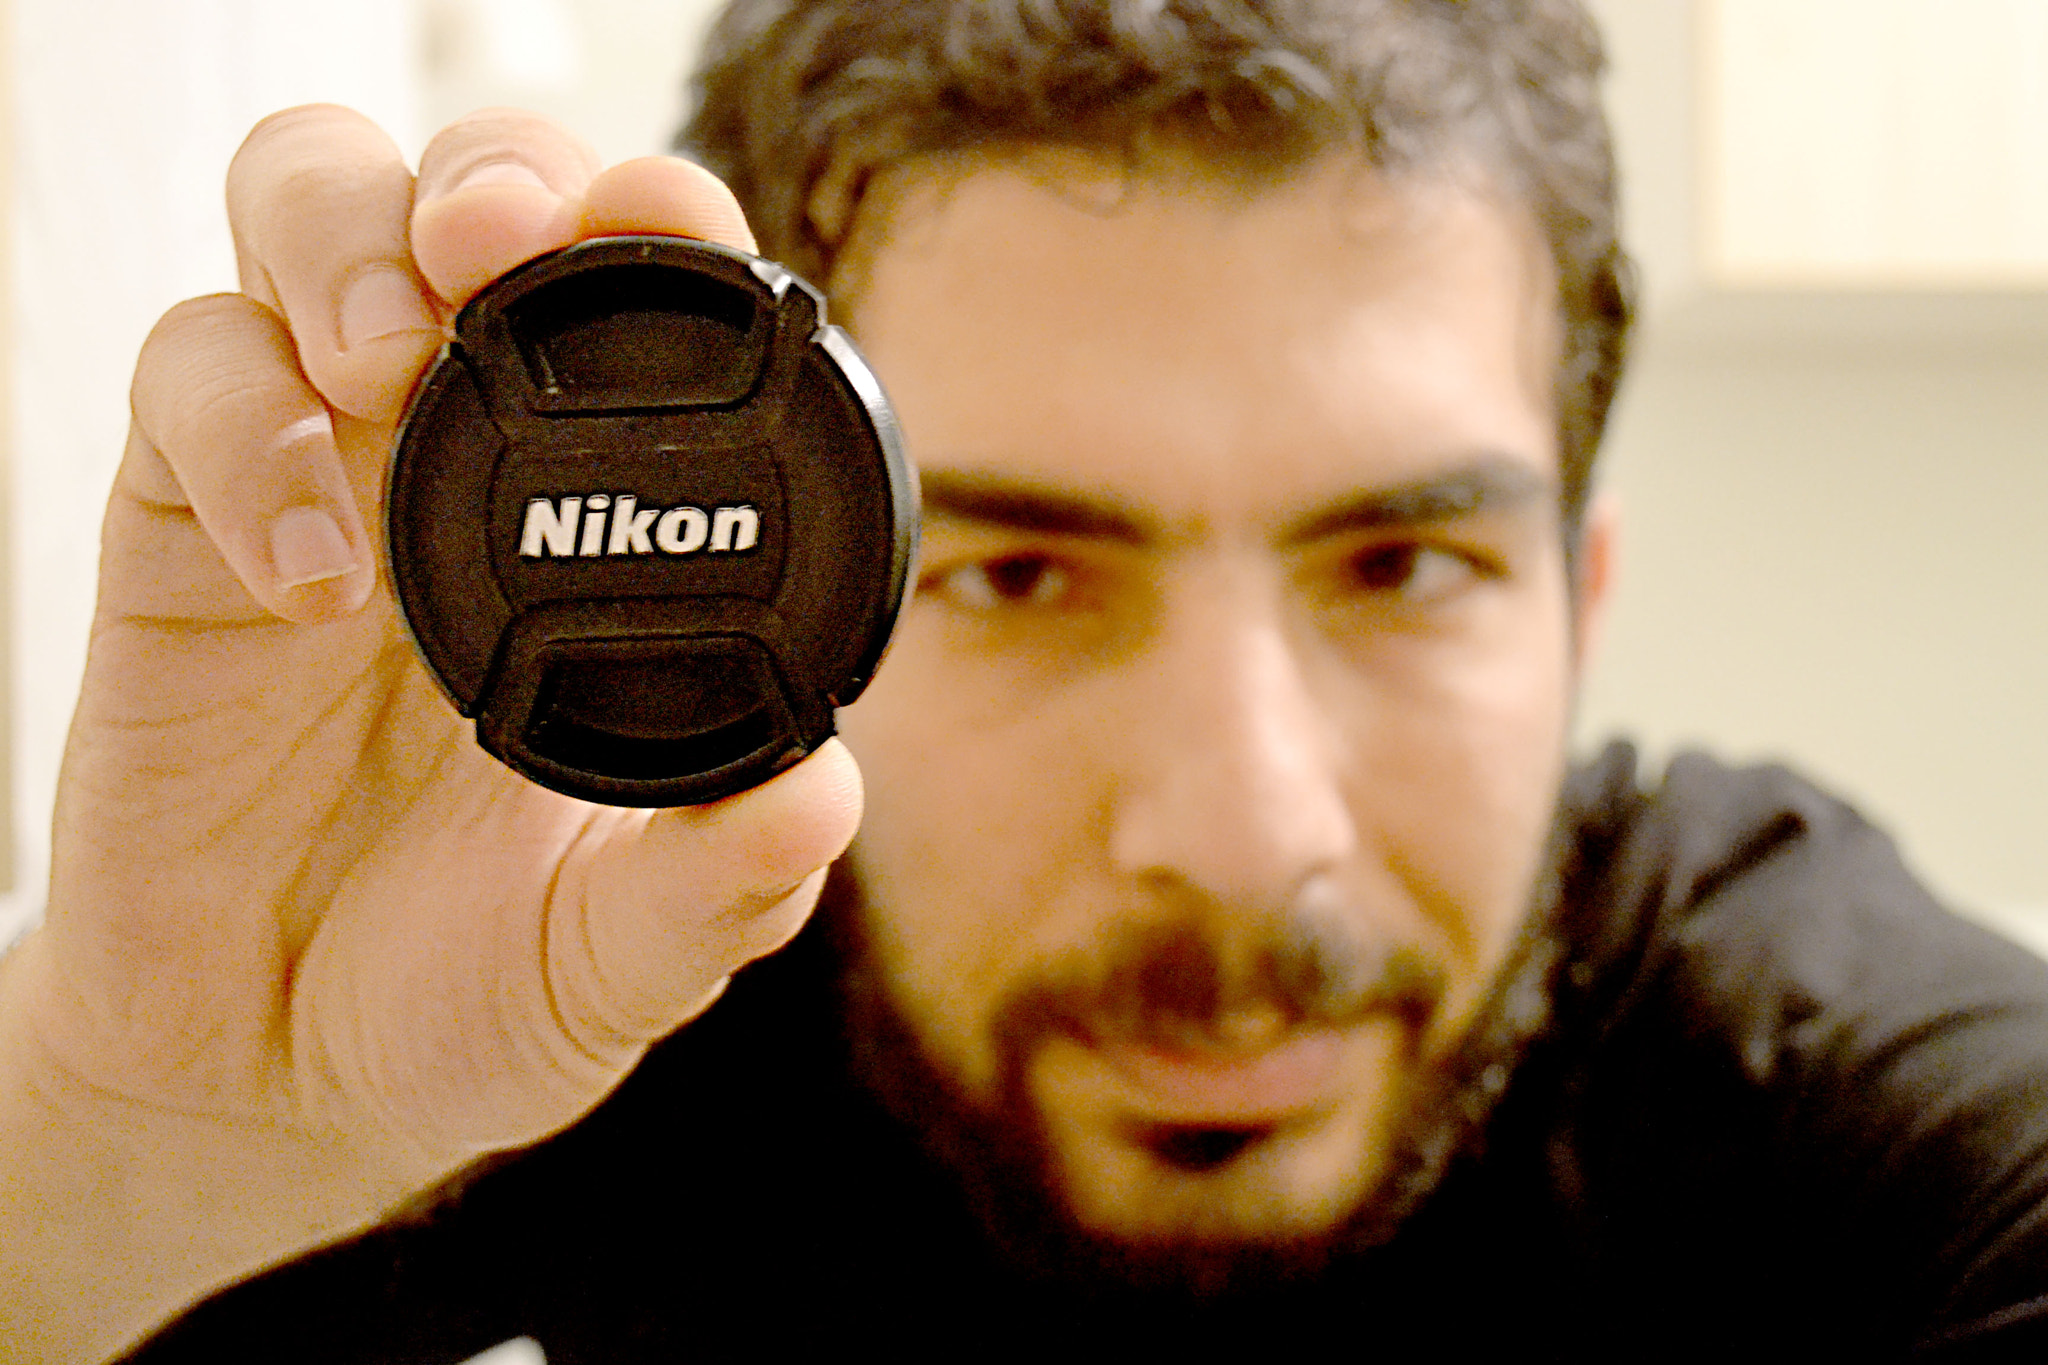 Nikon D3100 + AF Zoom-Nikkor 28-105mm f/3.5-4.5D IF sample photo. Me and nikon photography